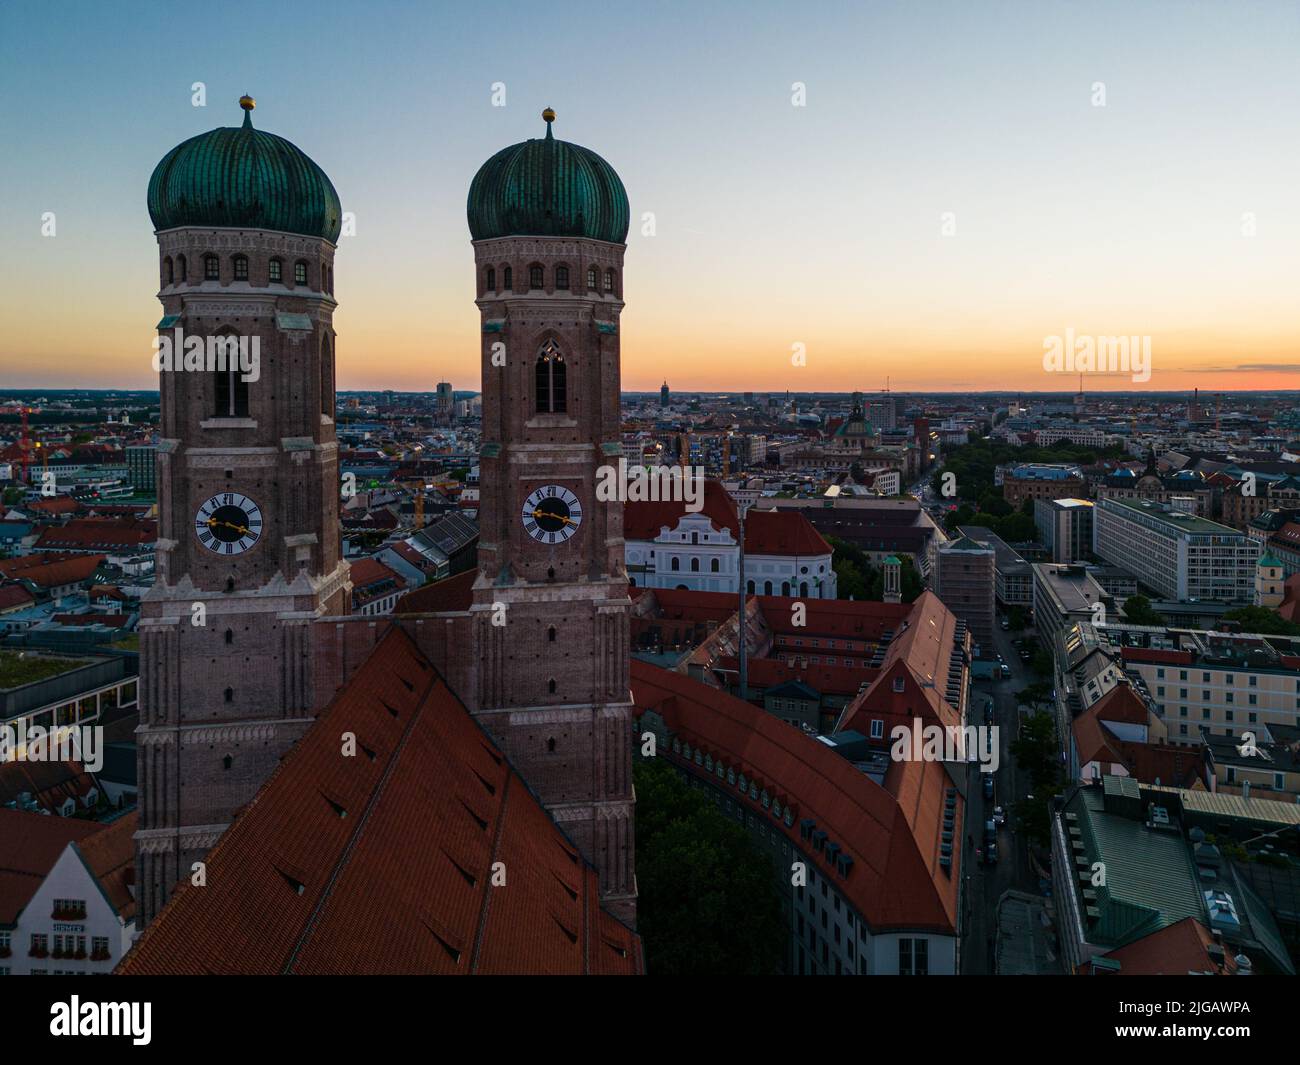 Les Tours Frauenkirche avec un magnifique ciel de soirée à Munich, Allemagne Banque D'Images